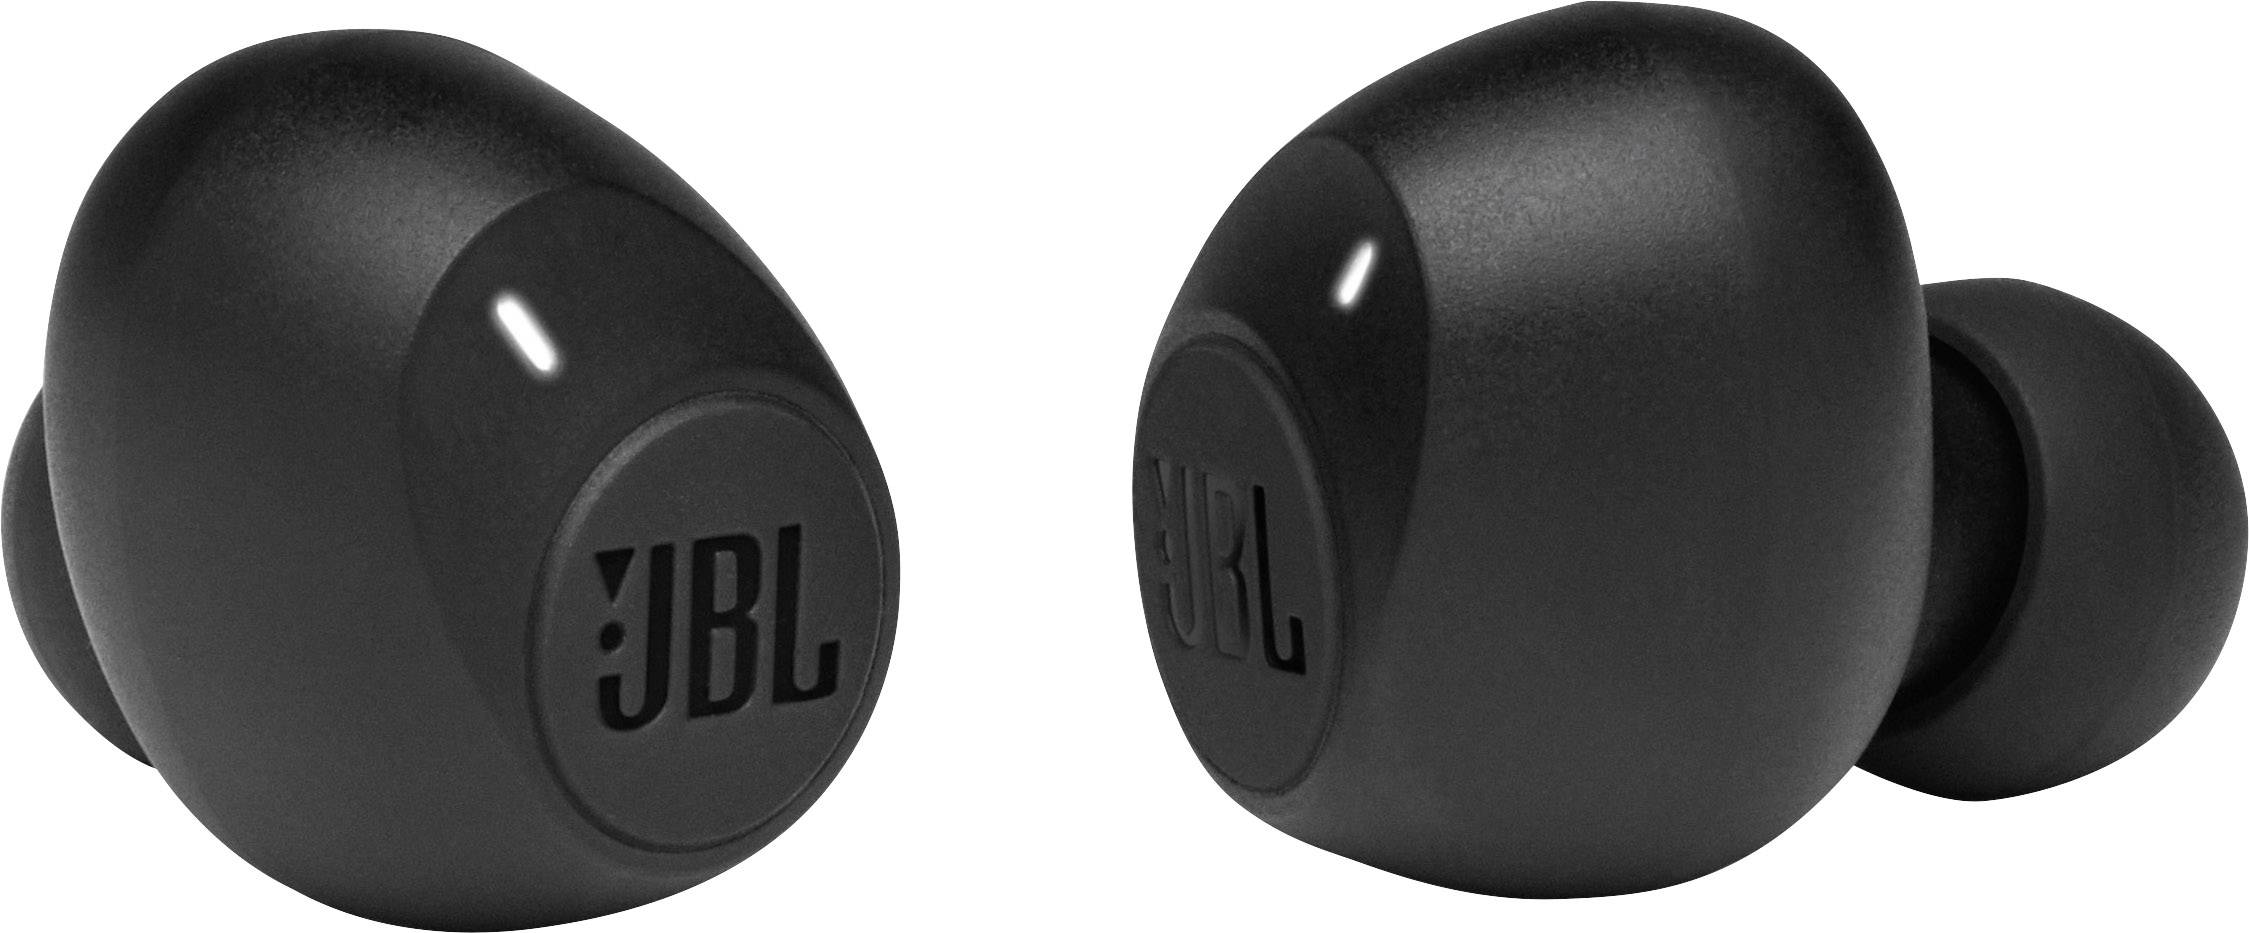 Наушники jbl 115 tws. JBL Tune 115tws. JBL Tune 115tws (черный). JBL Tune 115 TWS Black jblt115twsblk. Беспроводные наушники JBL Tune 115.